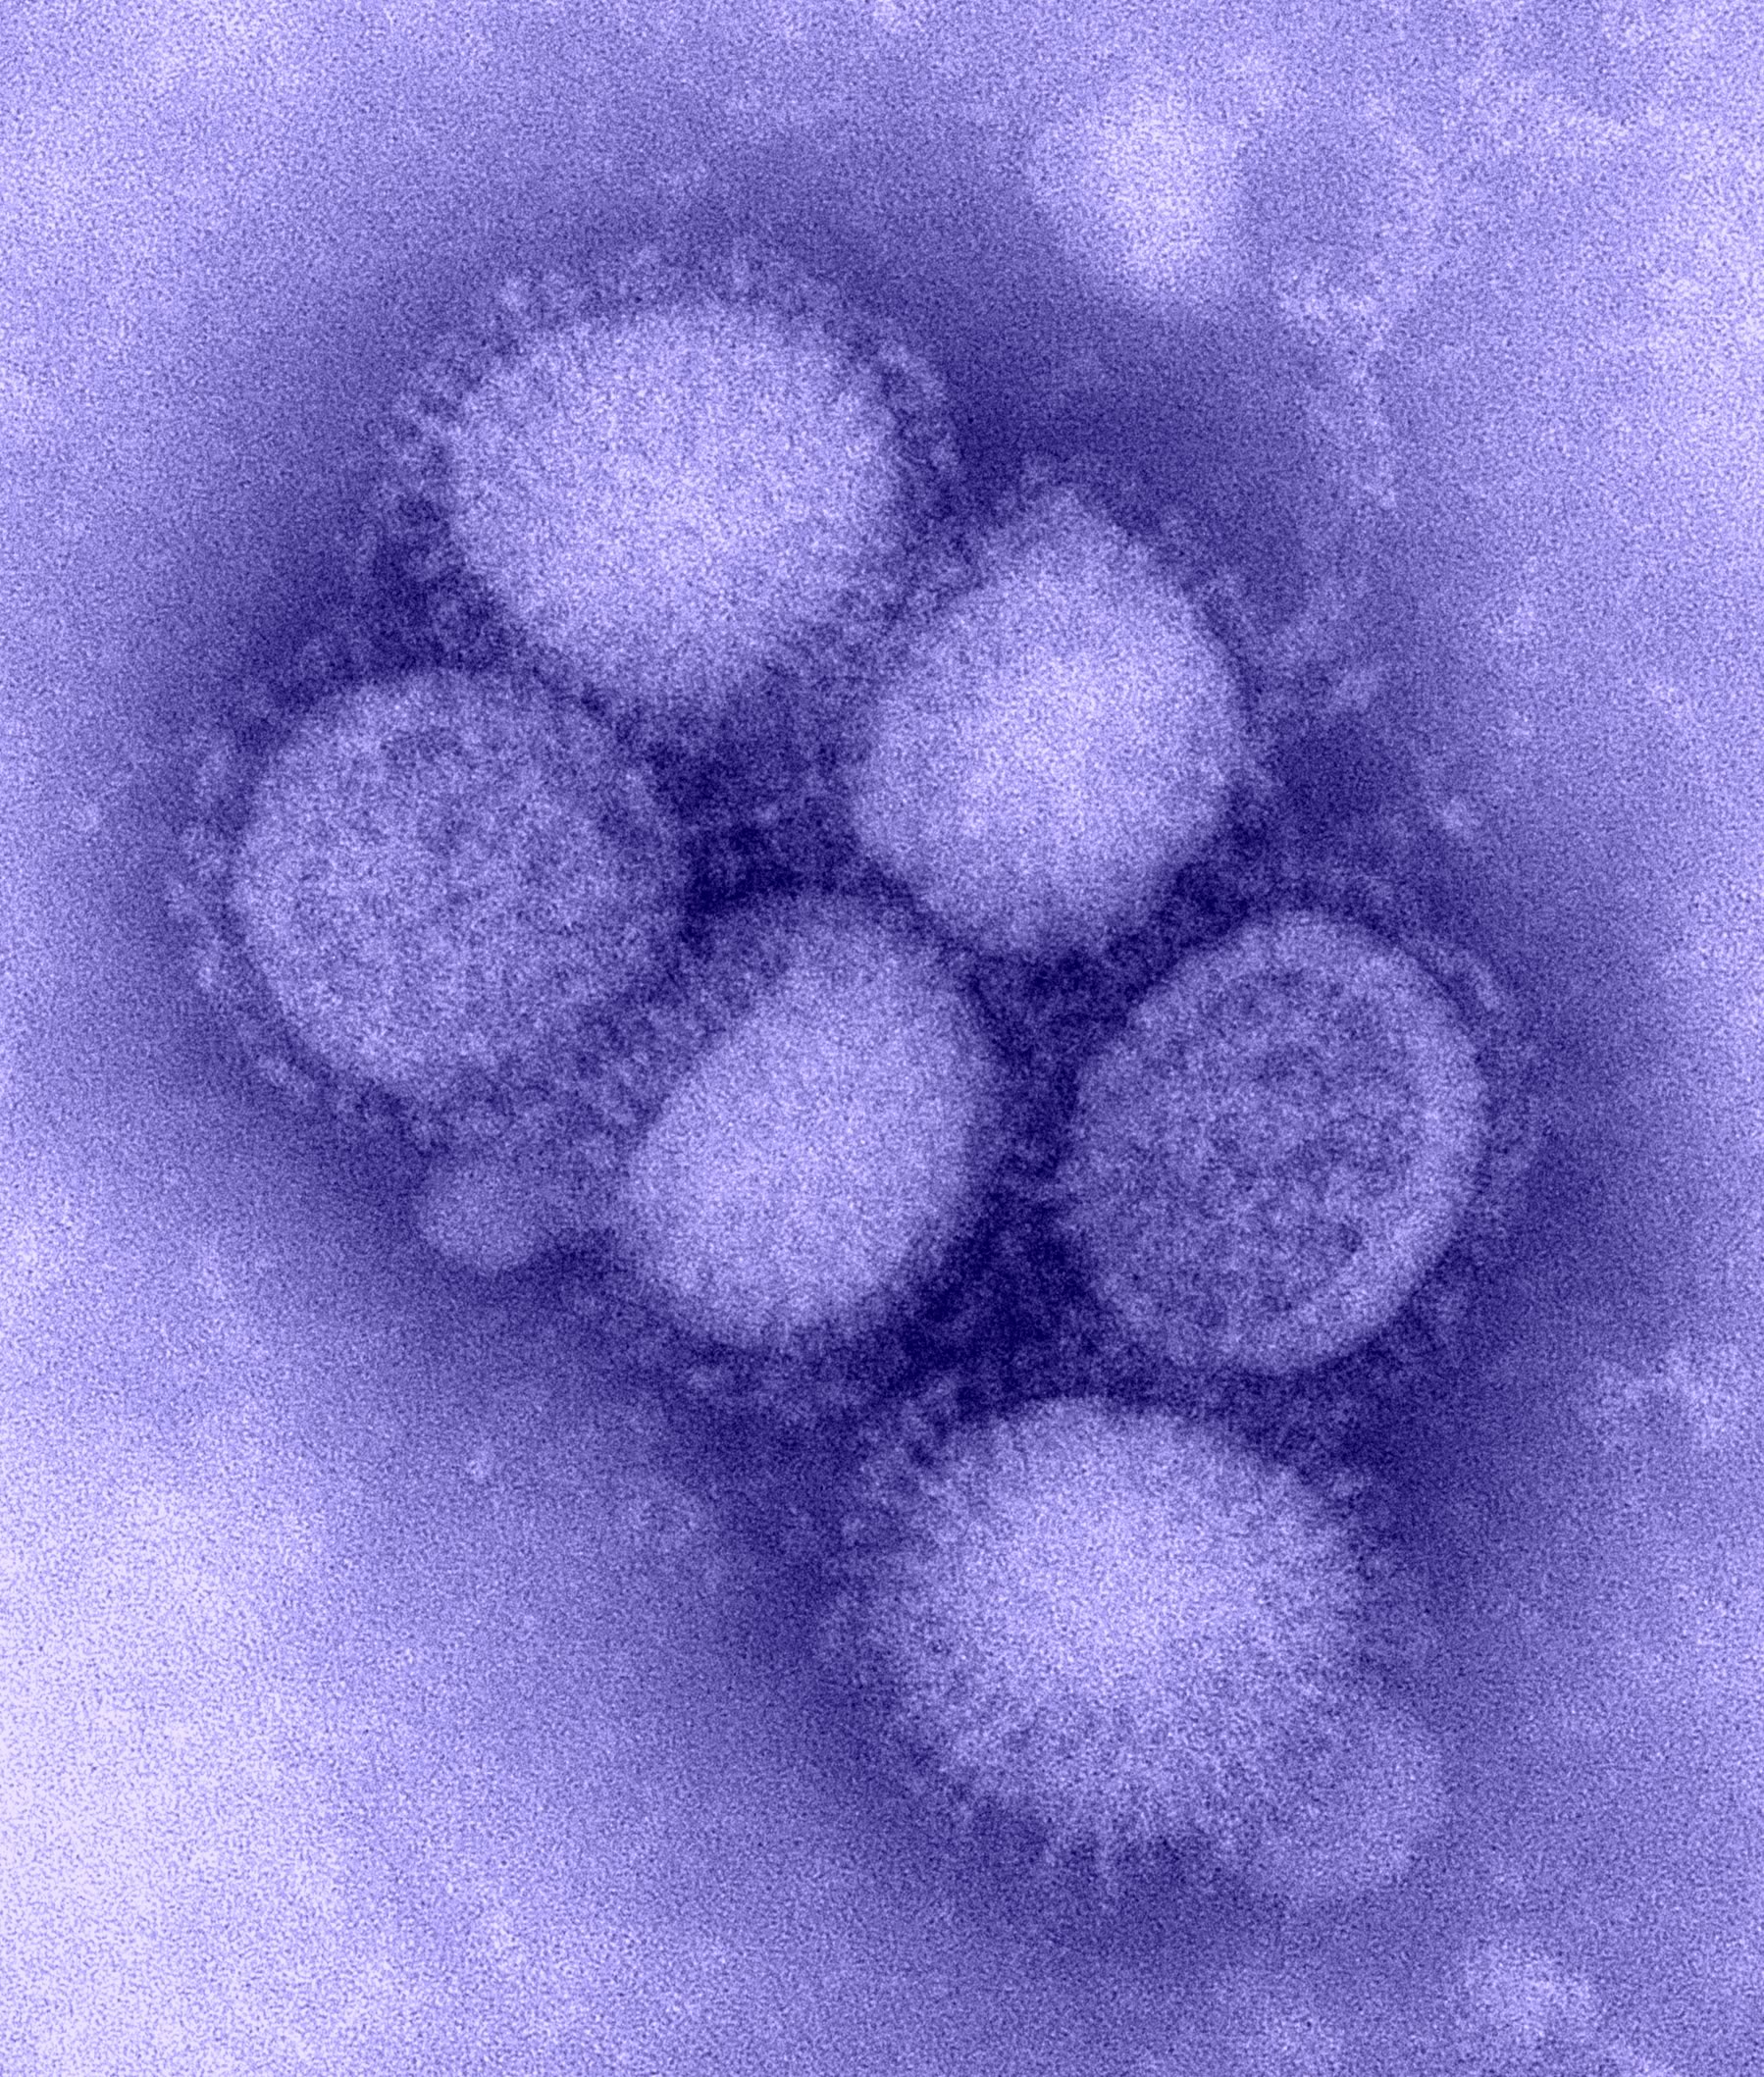 flu-h1n1-B00528-cdc